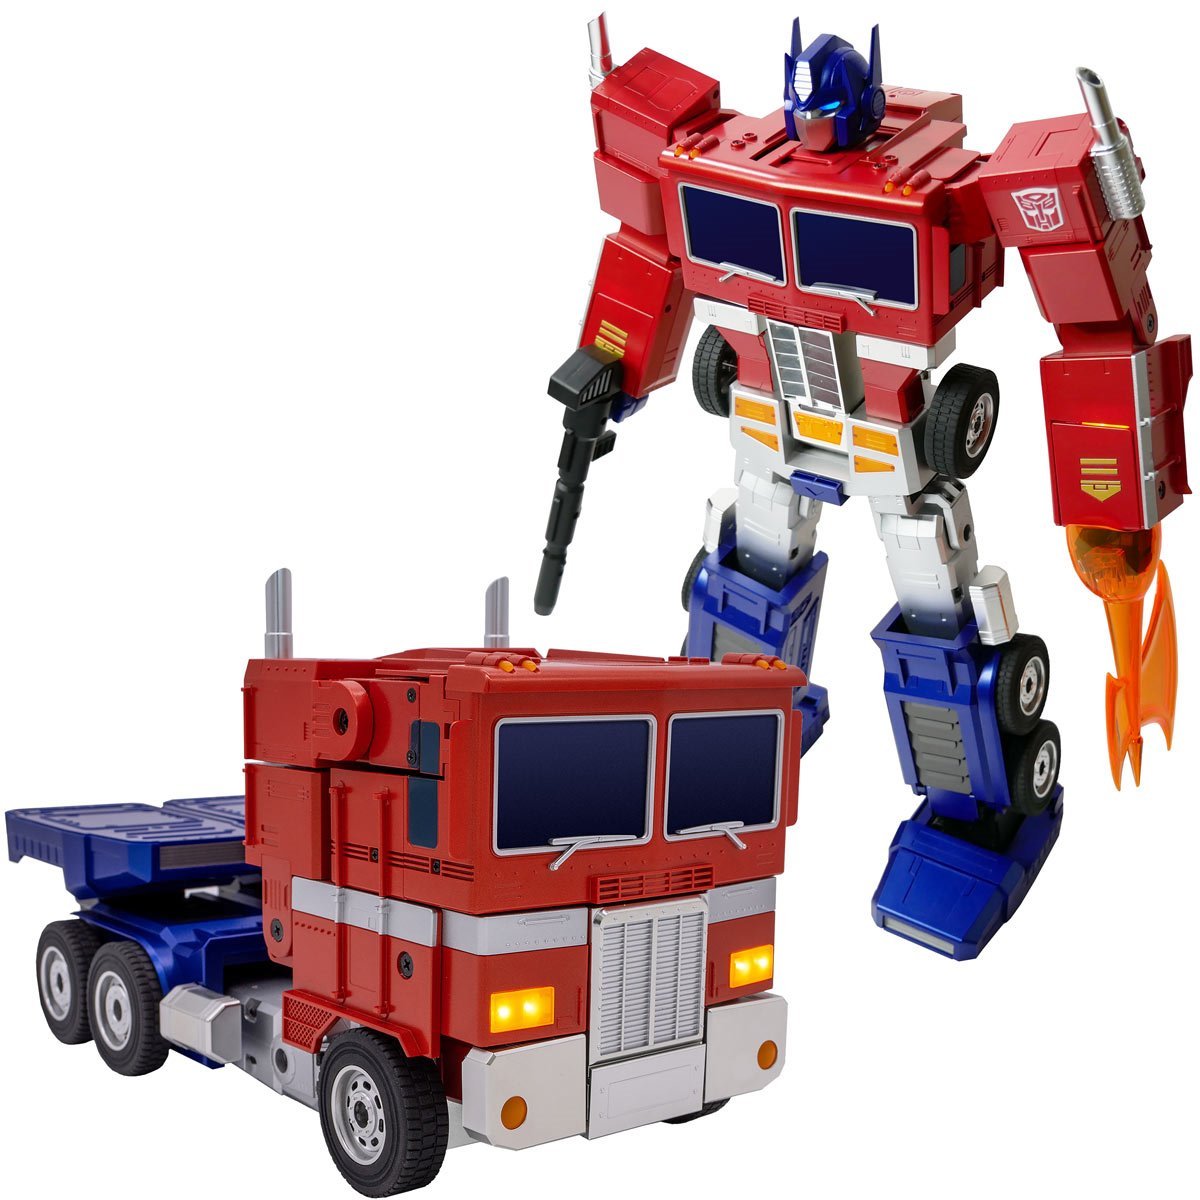 Transformers - Auto-Converting Robot - Optimus Prime Elite